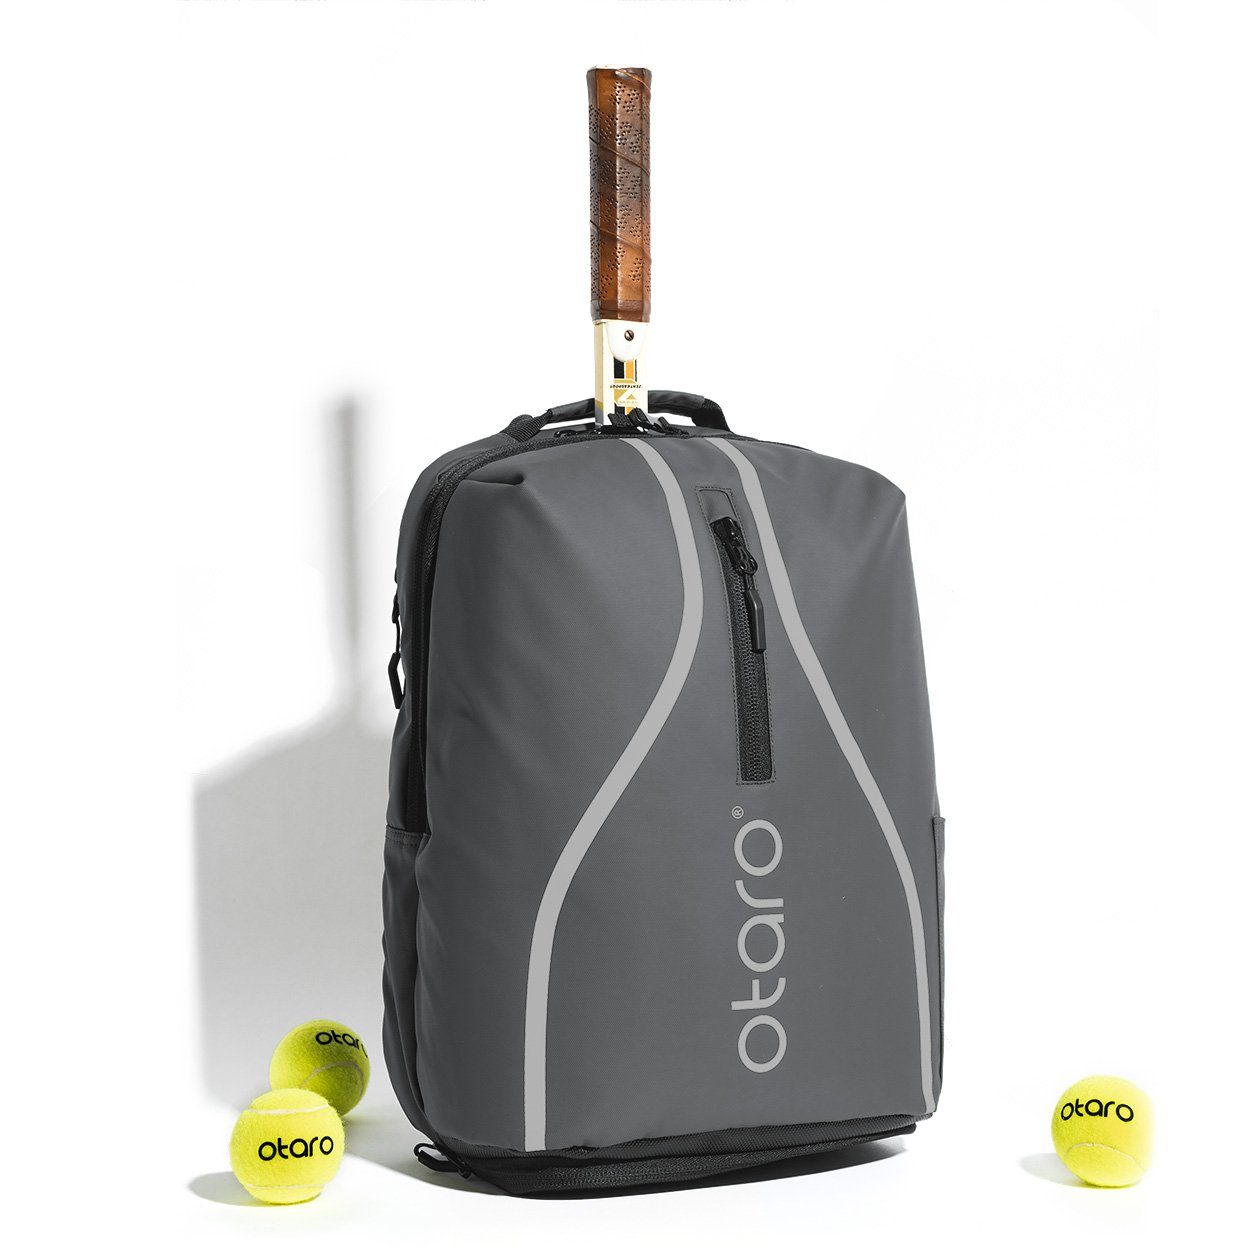 Otaro Tennisrucksack Tennisrucksack mit Schuhfach, Classic 32L (Innovative Tennistasche, Perfekt durchdacht, mit Regenschutz + Wäschebeutel, für Tennis + Badminton), Aus wasserabweisender LKW-Plane NewYork Grau reflektierend